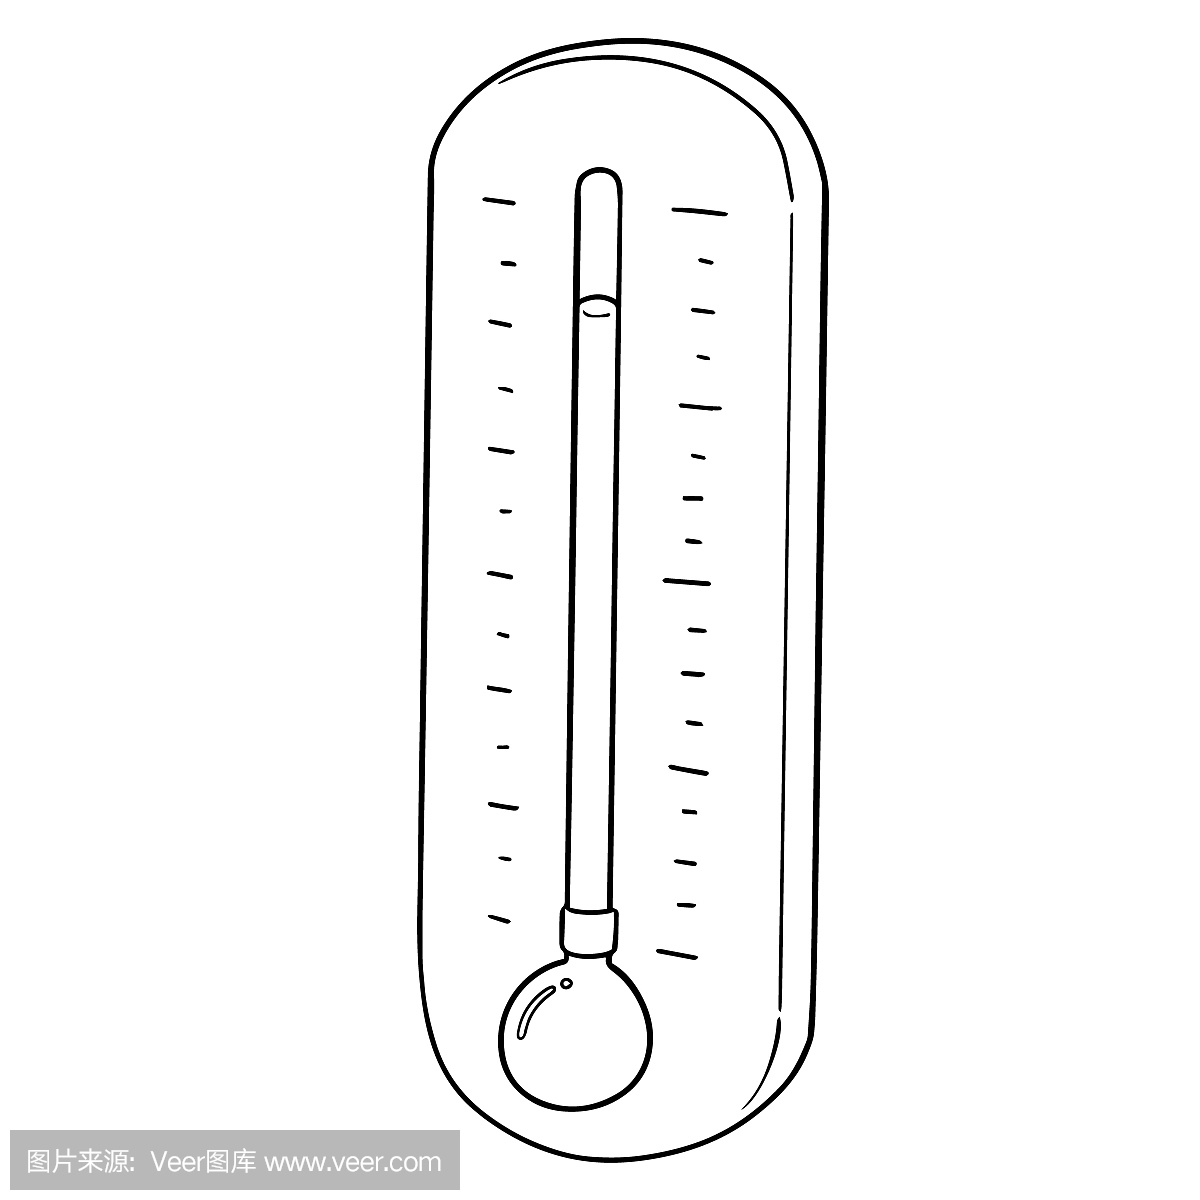 华氏温标,华氏温度计的,华氏温度,华氏温度计